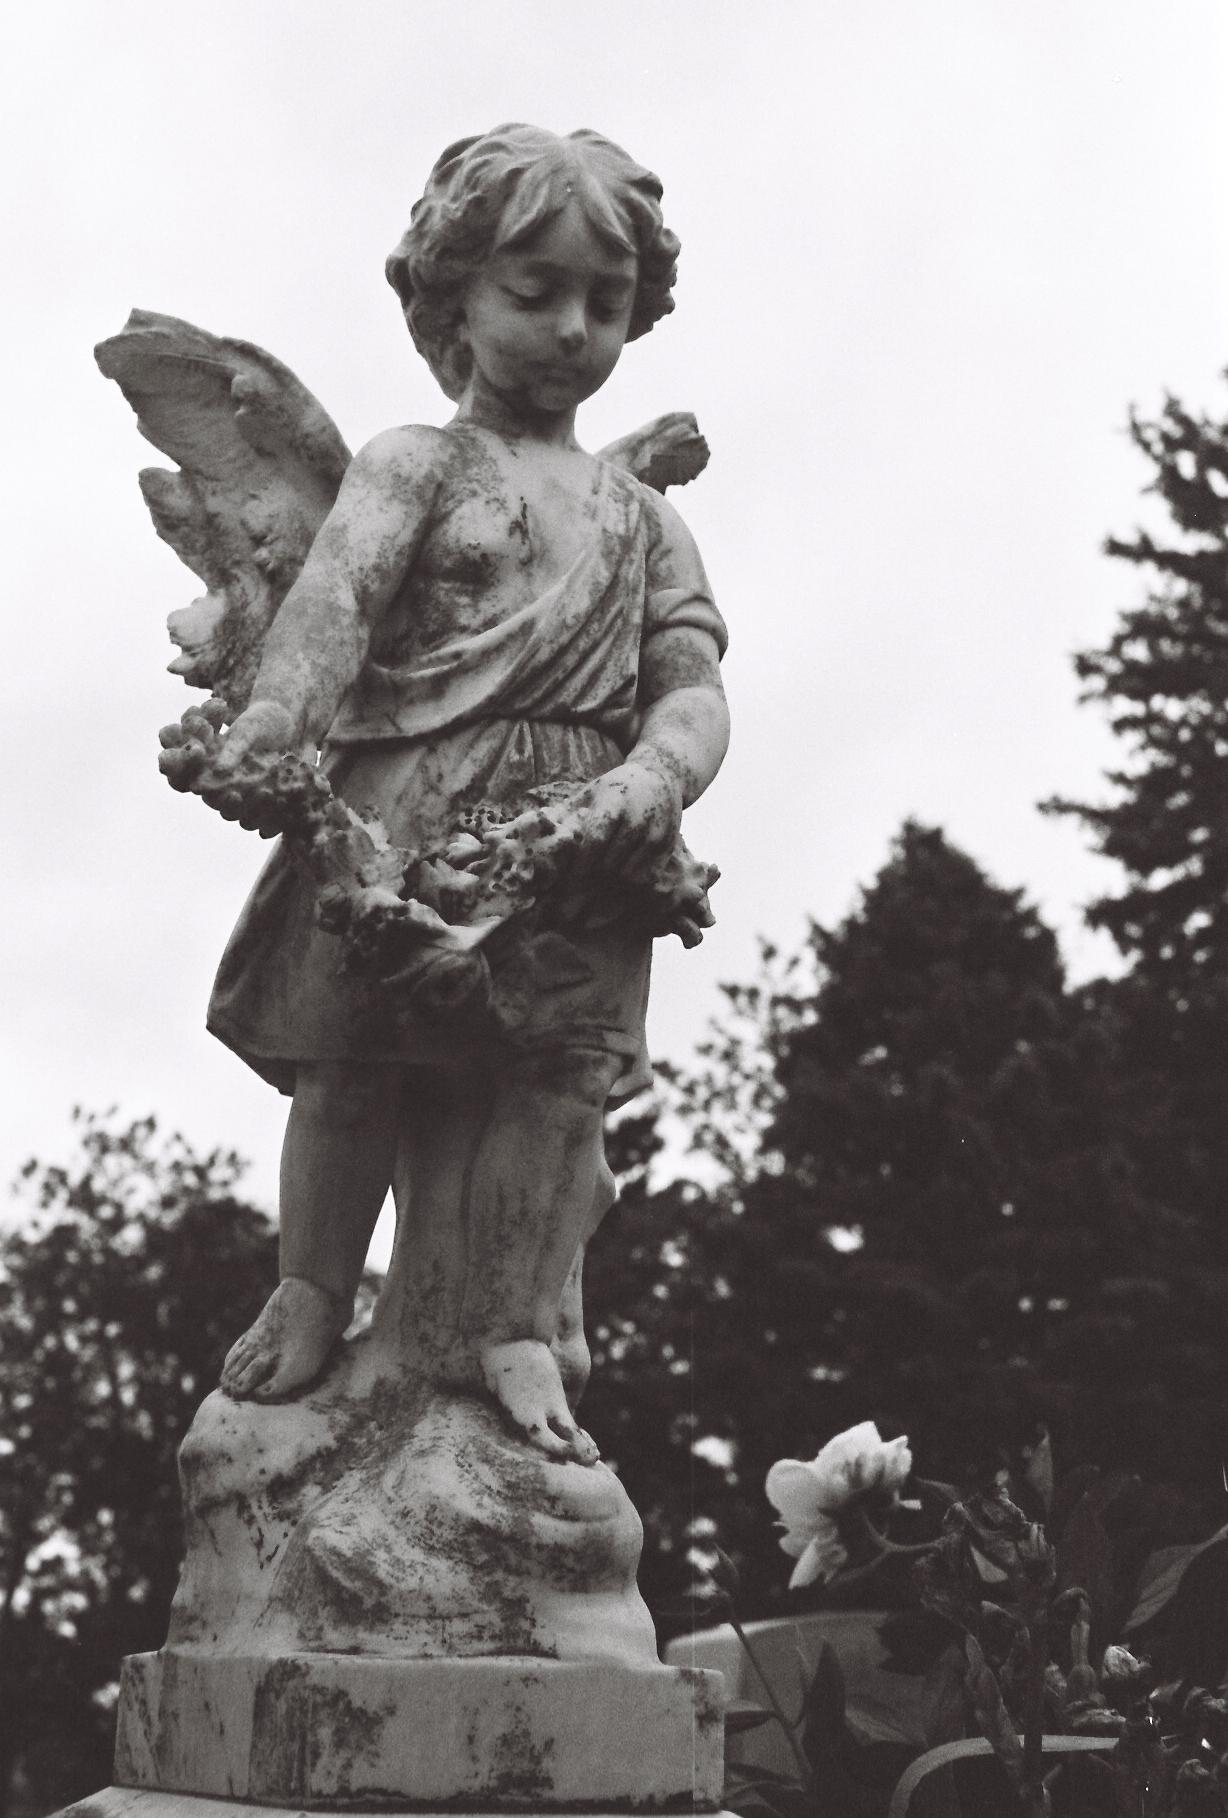 Cherub statue in the cemetery